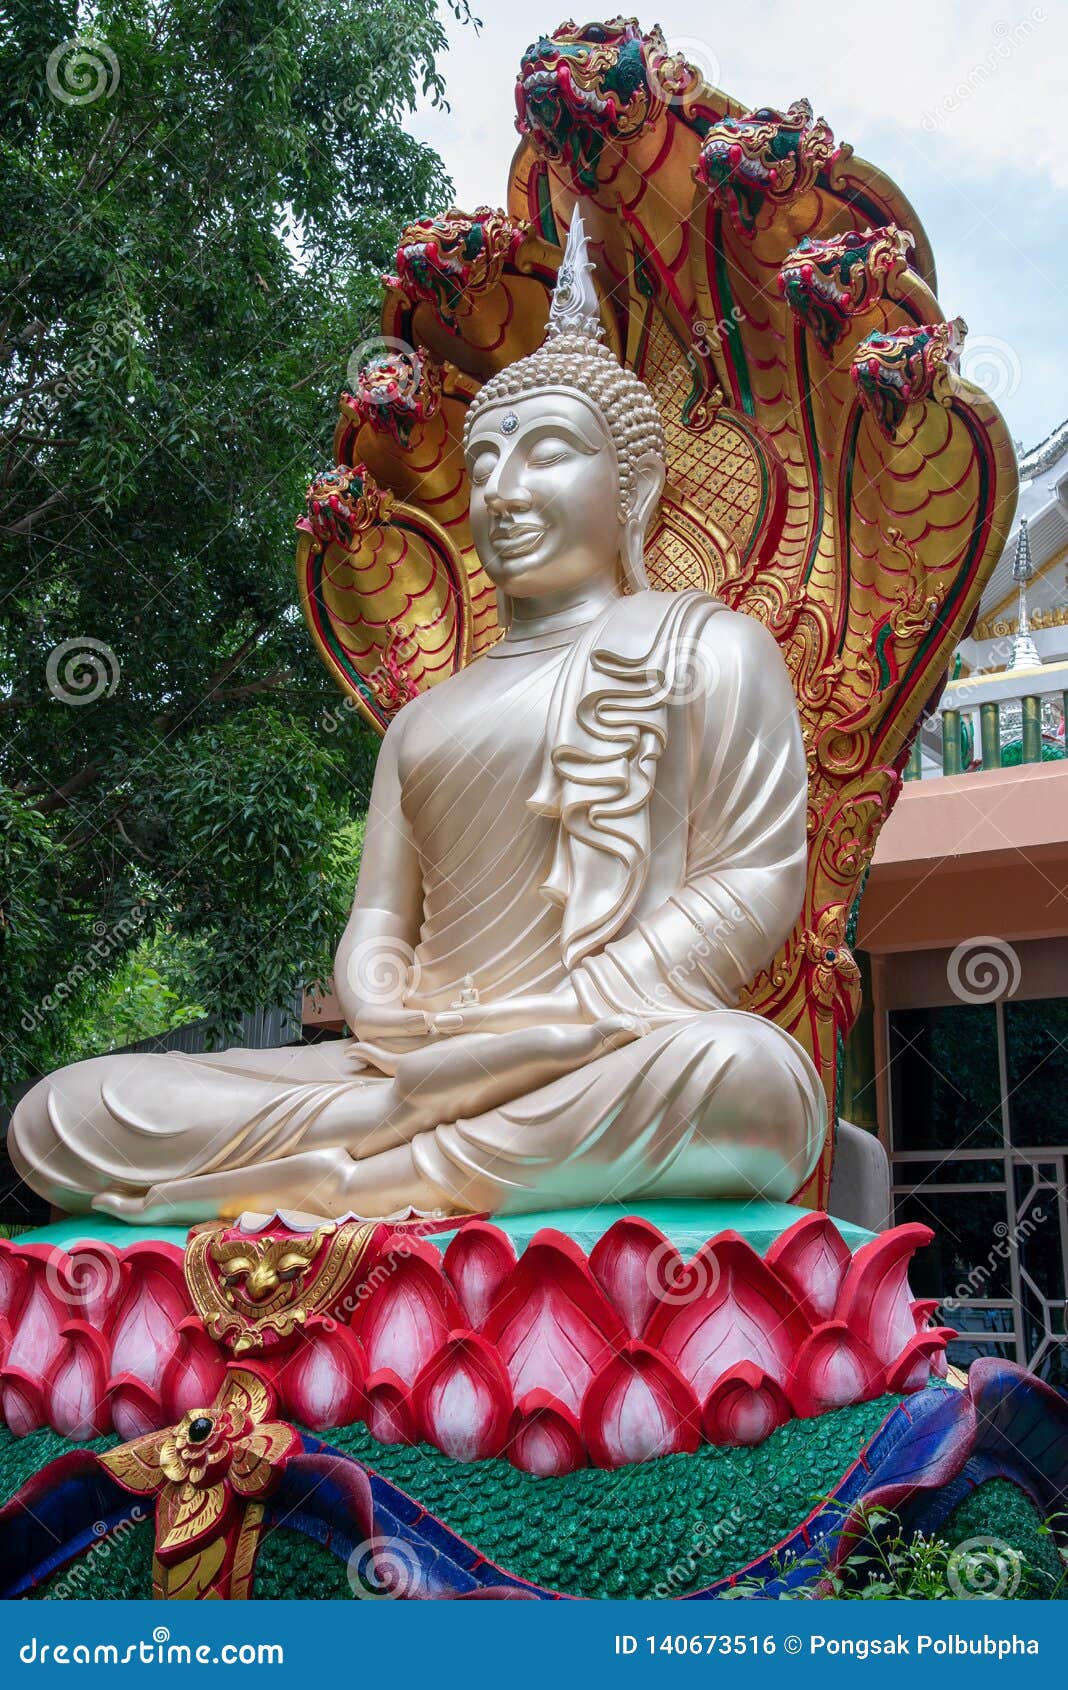 chora Estatua Animal de la meditación más Nueva de la Estatua de la Rana de Yoga Estatua de Lotus meditación Pose Estatua de Mascotas Zen Yoga Pose Relajada Pose Buda Escultura benchmark